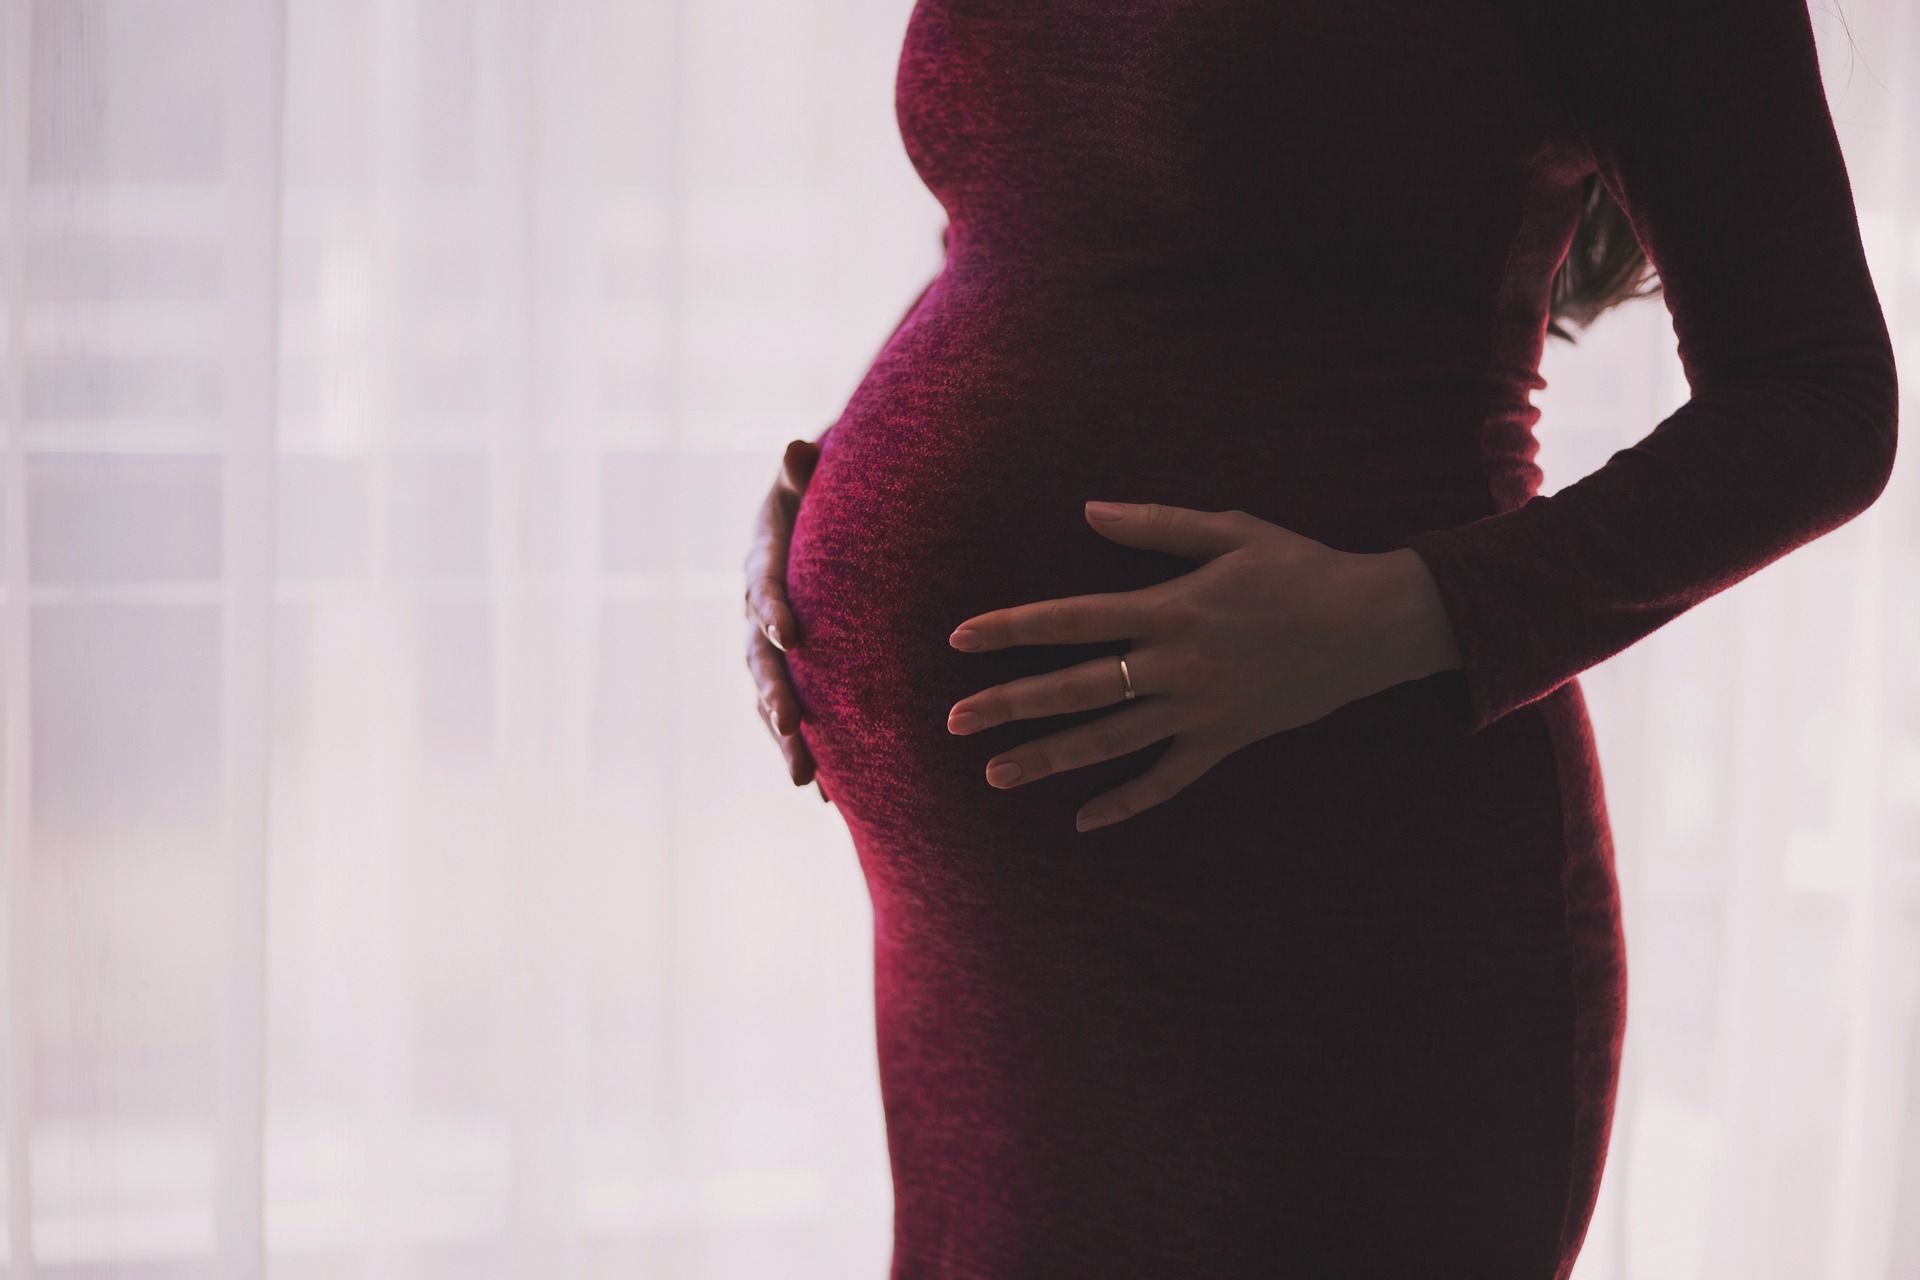 Ciąża bezobjawowa – przyczyny i zagrożenia